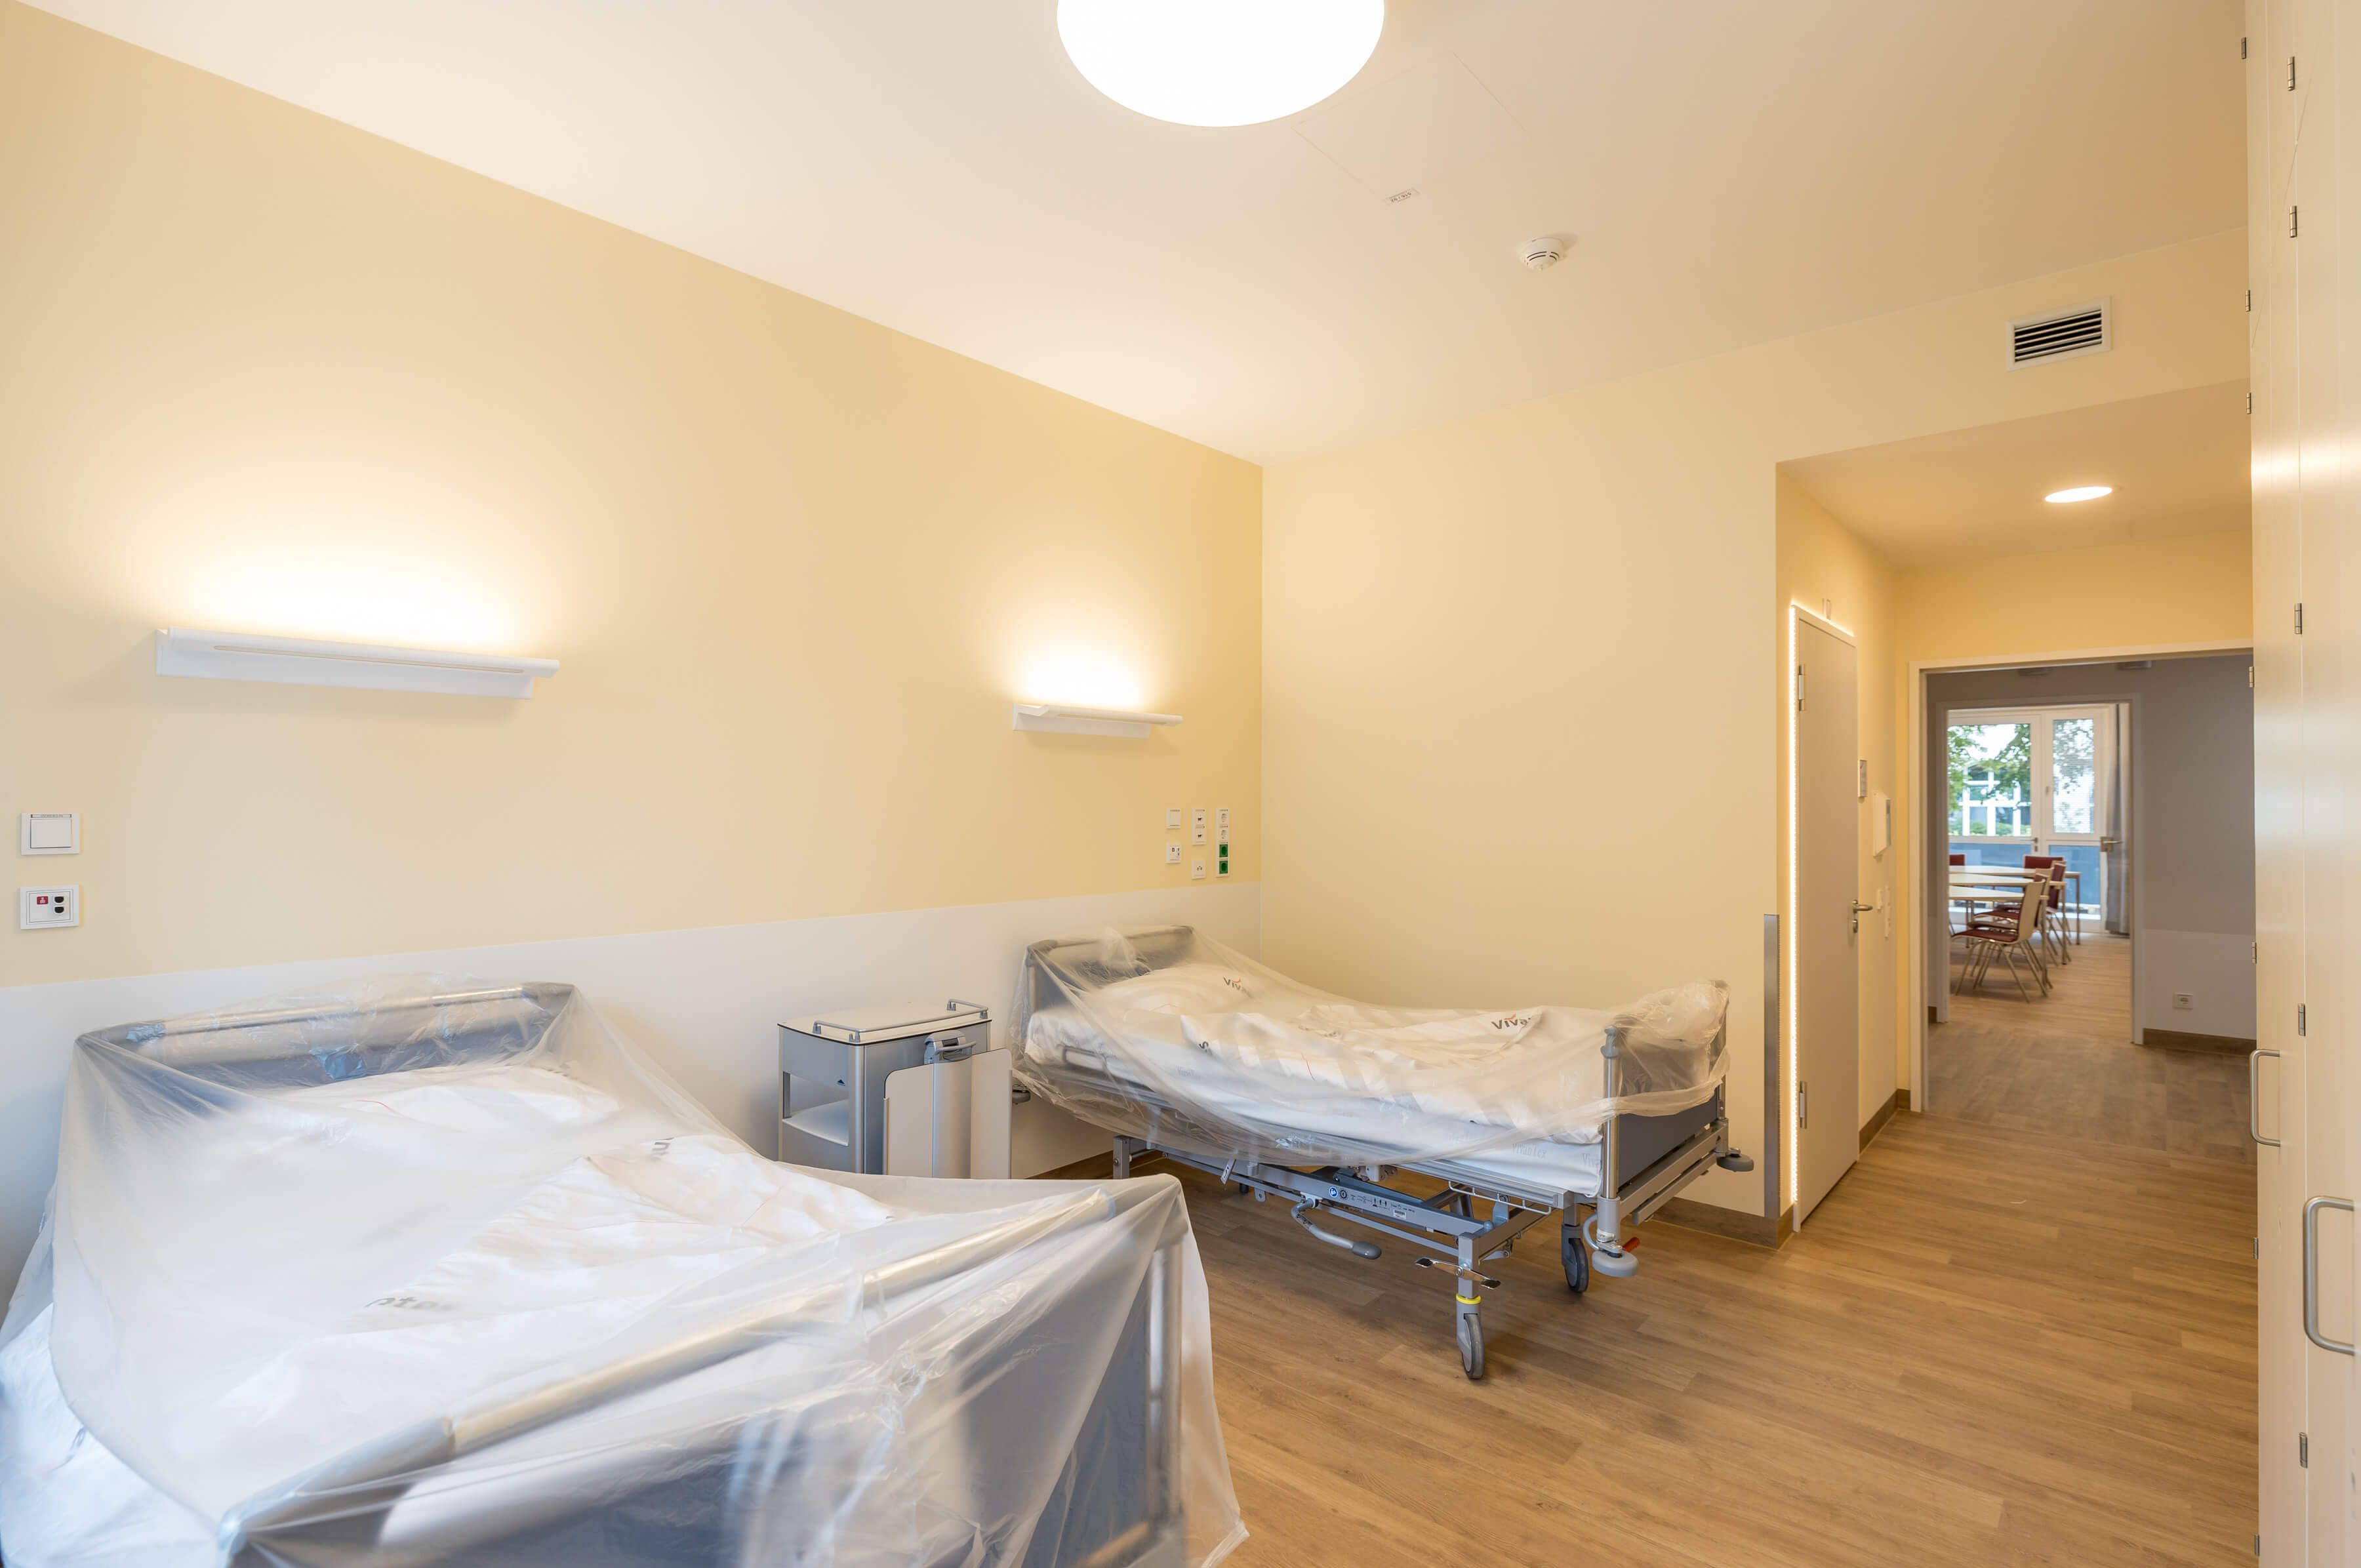 2-Bett-Zimmer im neuen Modulbau am Klinikum Neukölln